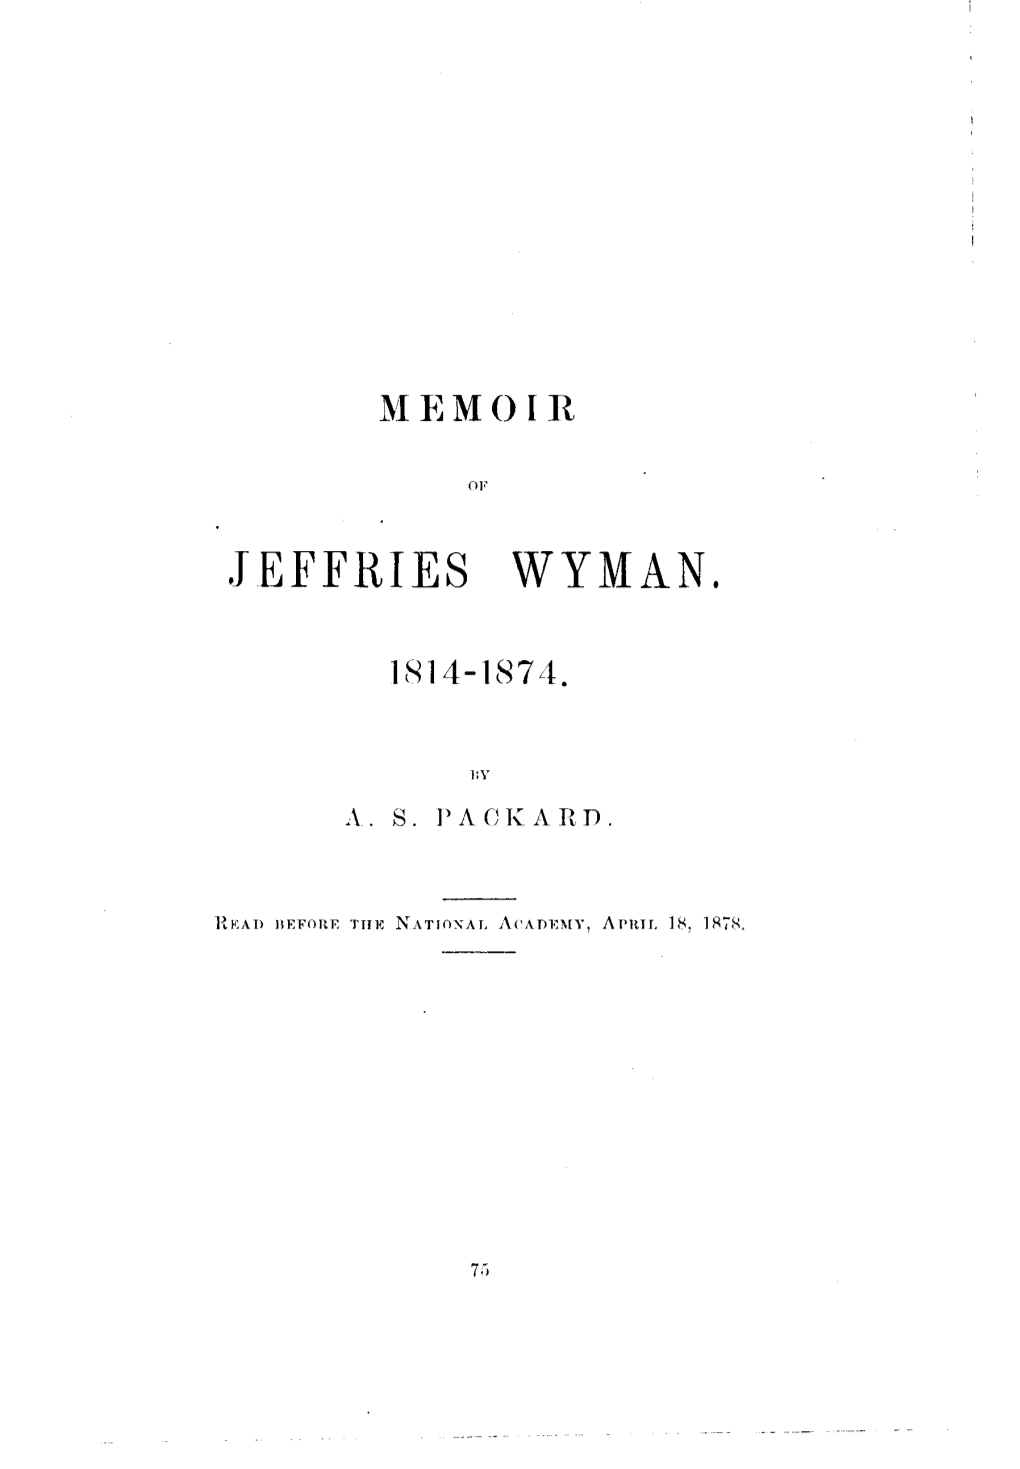 Jeffries Wyman